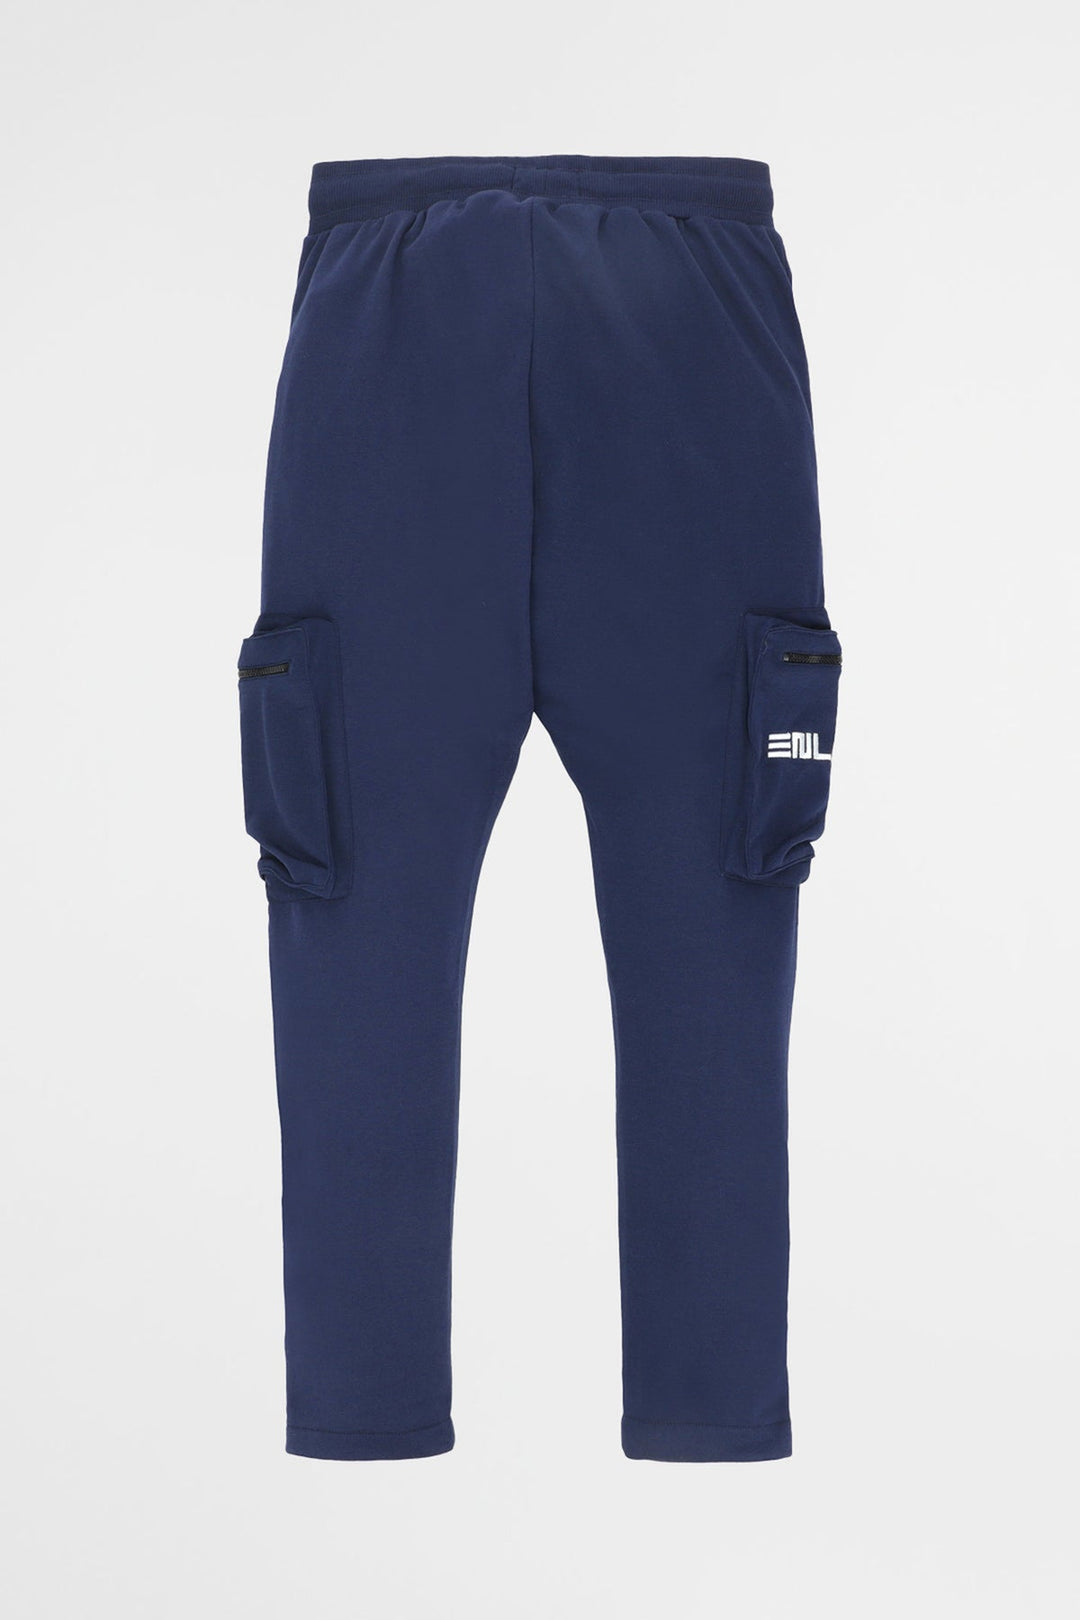 Enlive Navy Blue Trouser (Plus Size) - W22 - MTR051P